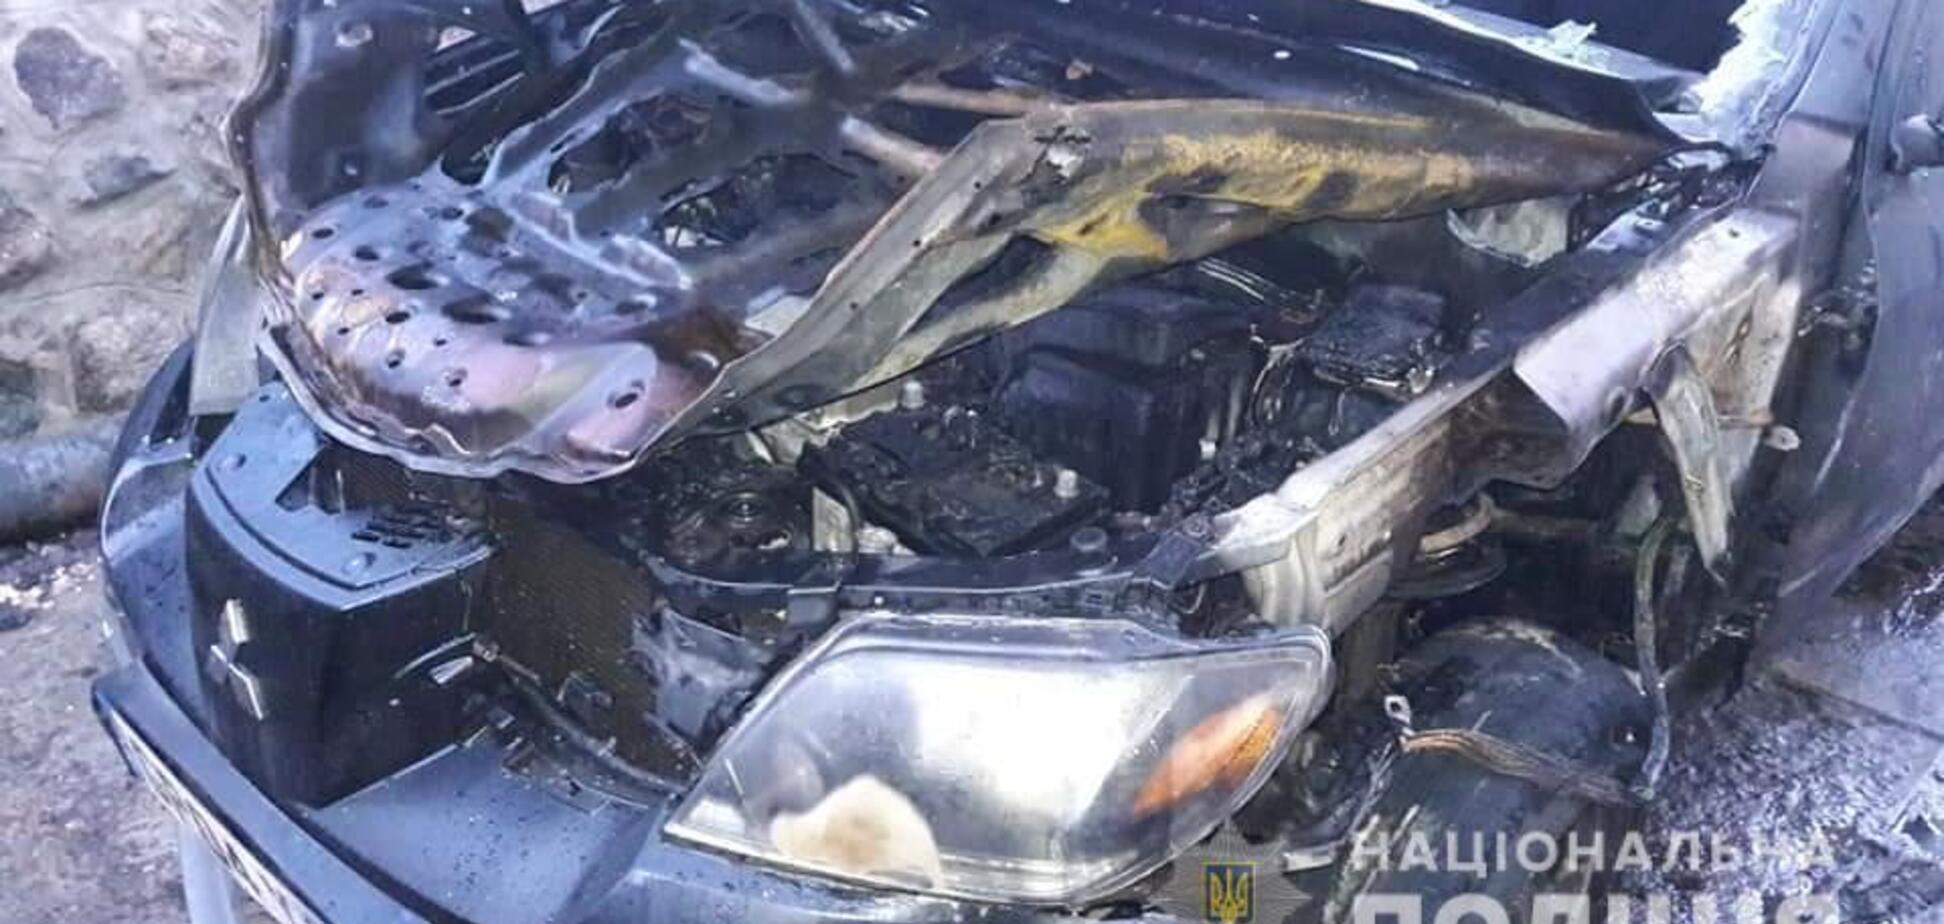 Під Києвом депутату підпалили авто на єврономерах: фото наслідків